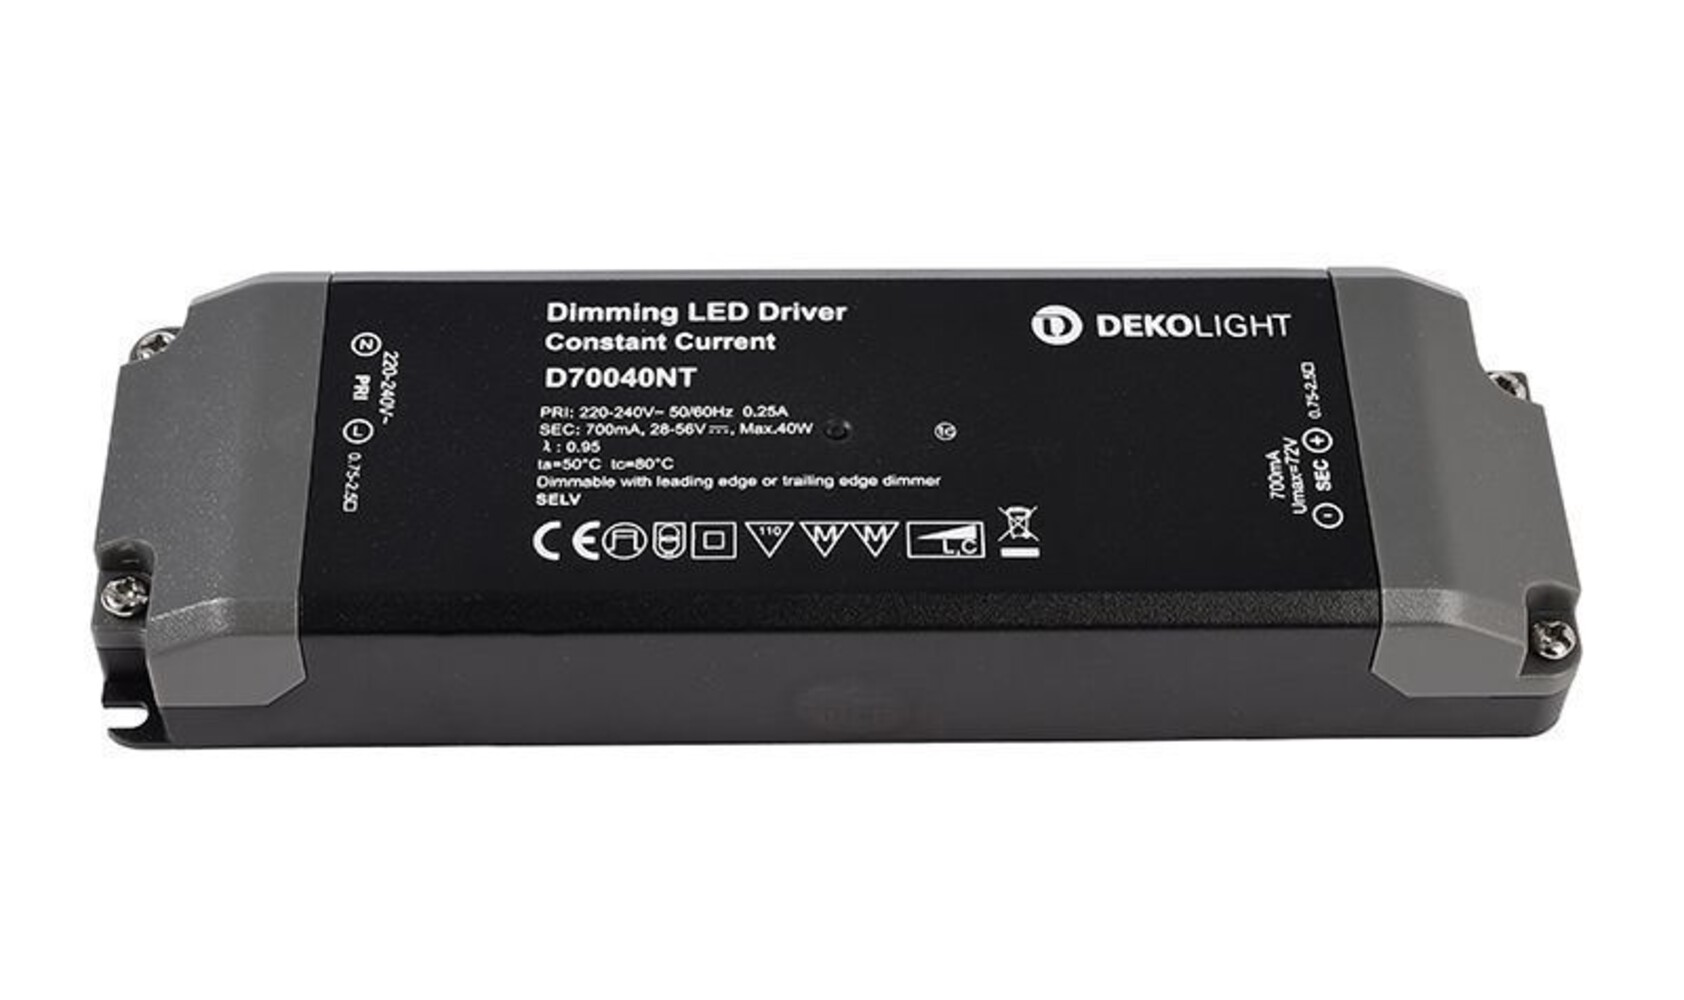 Hochwertiges LED Netzteil von Deko-Light in stilvollem Design